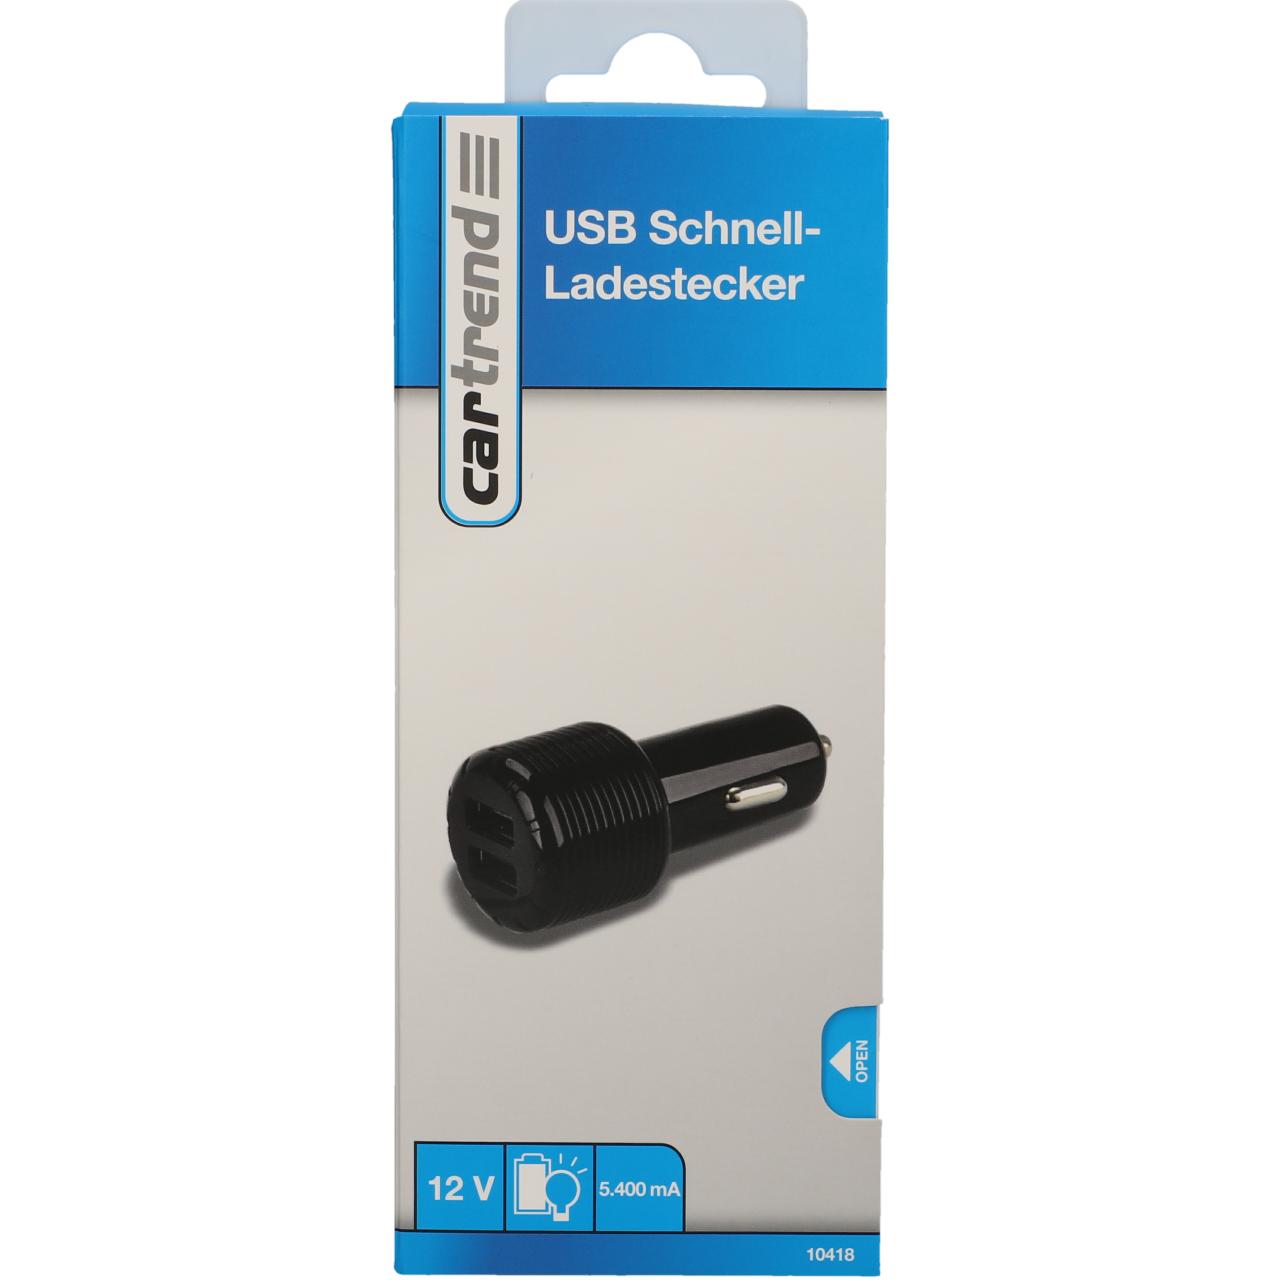 USB SCHNELLLADESTECKER